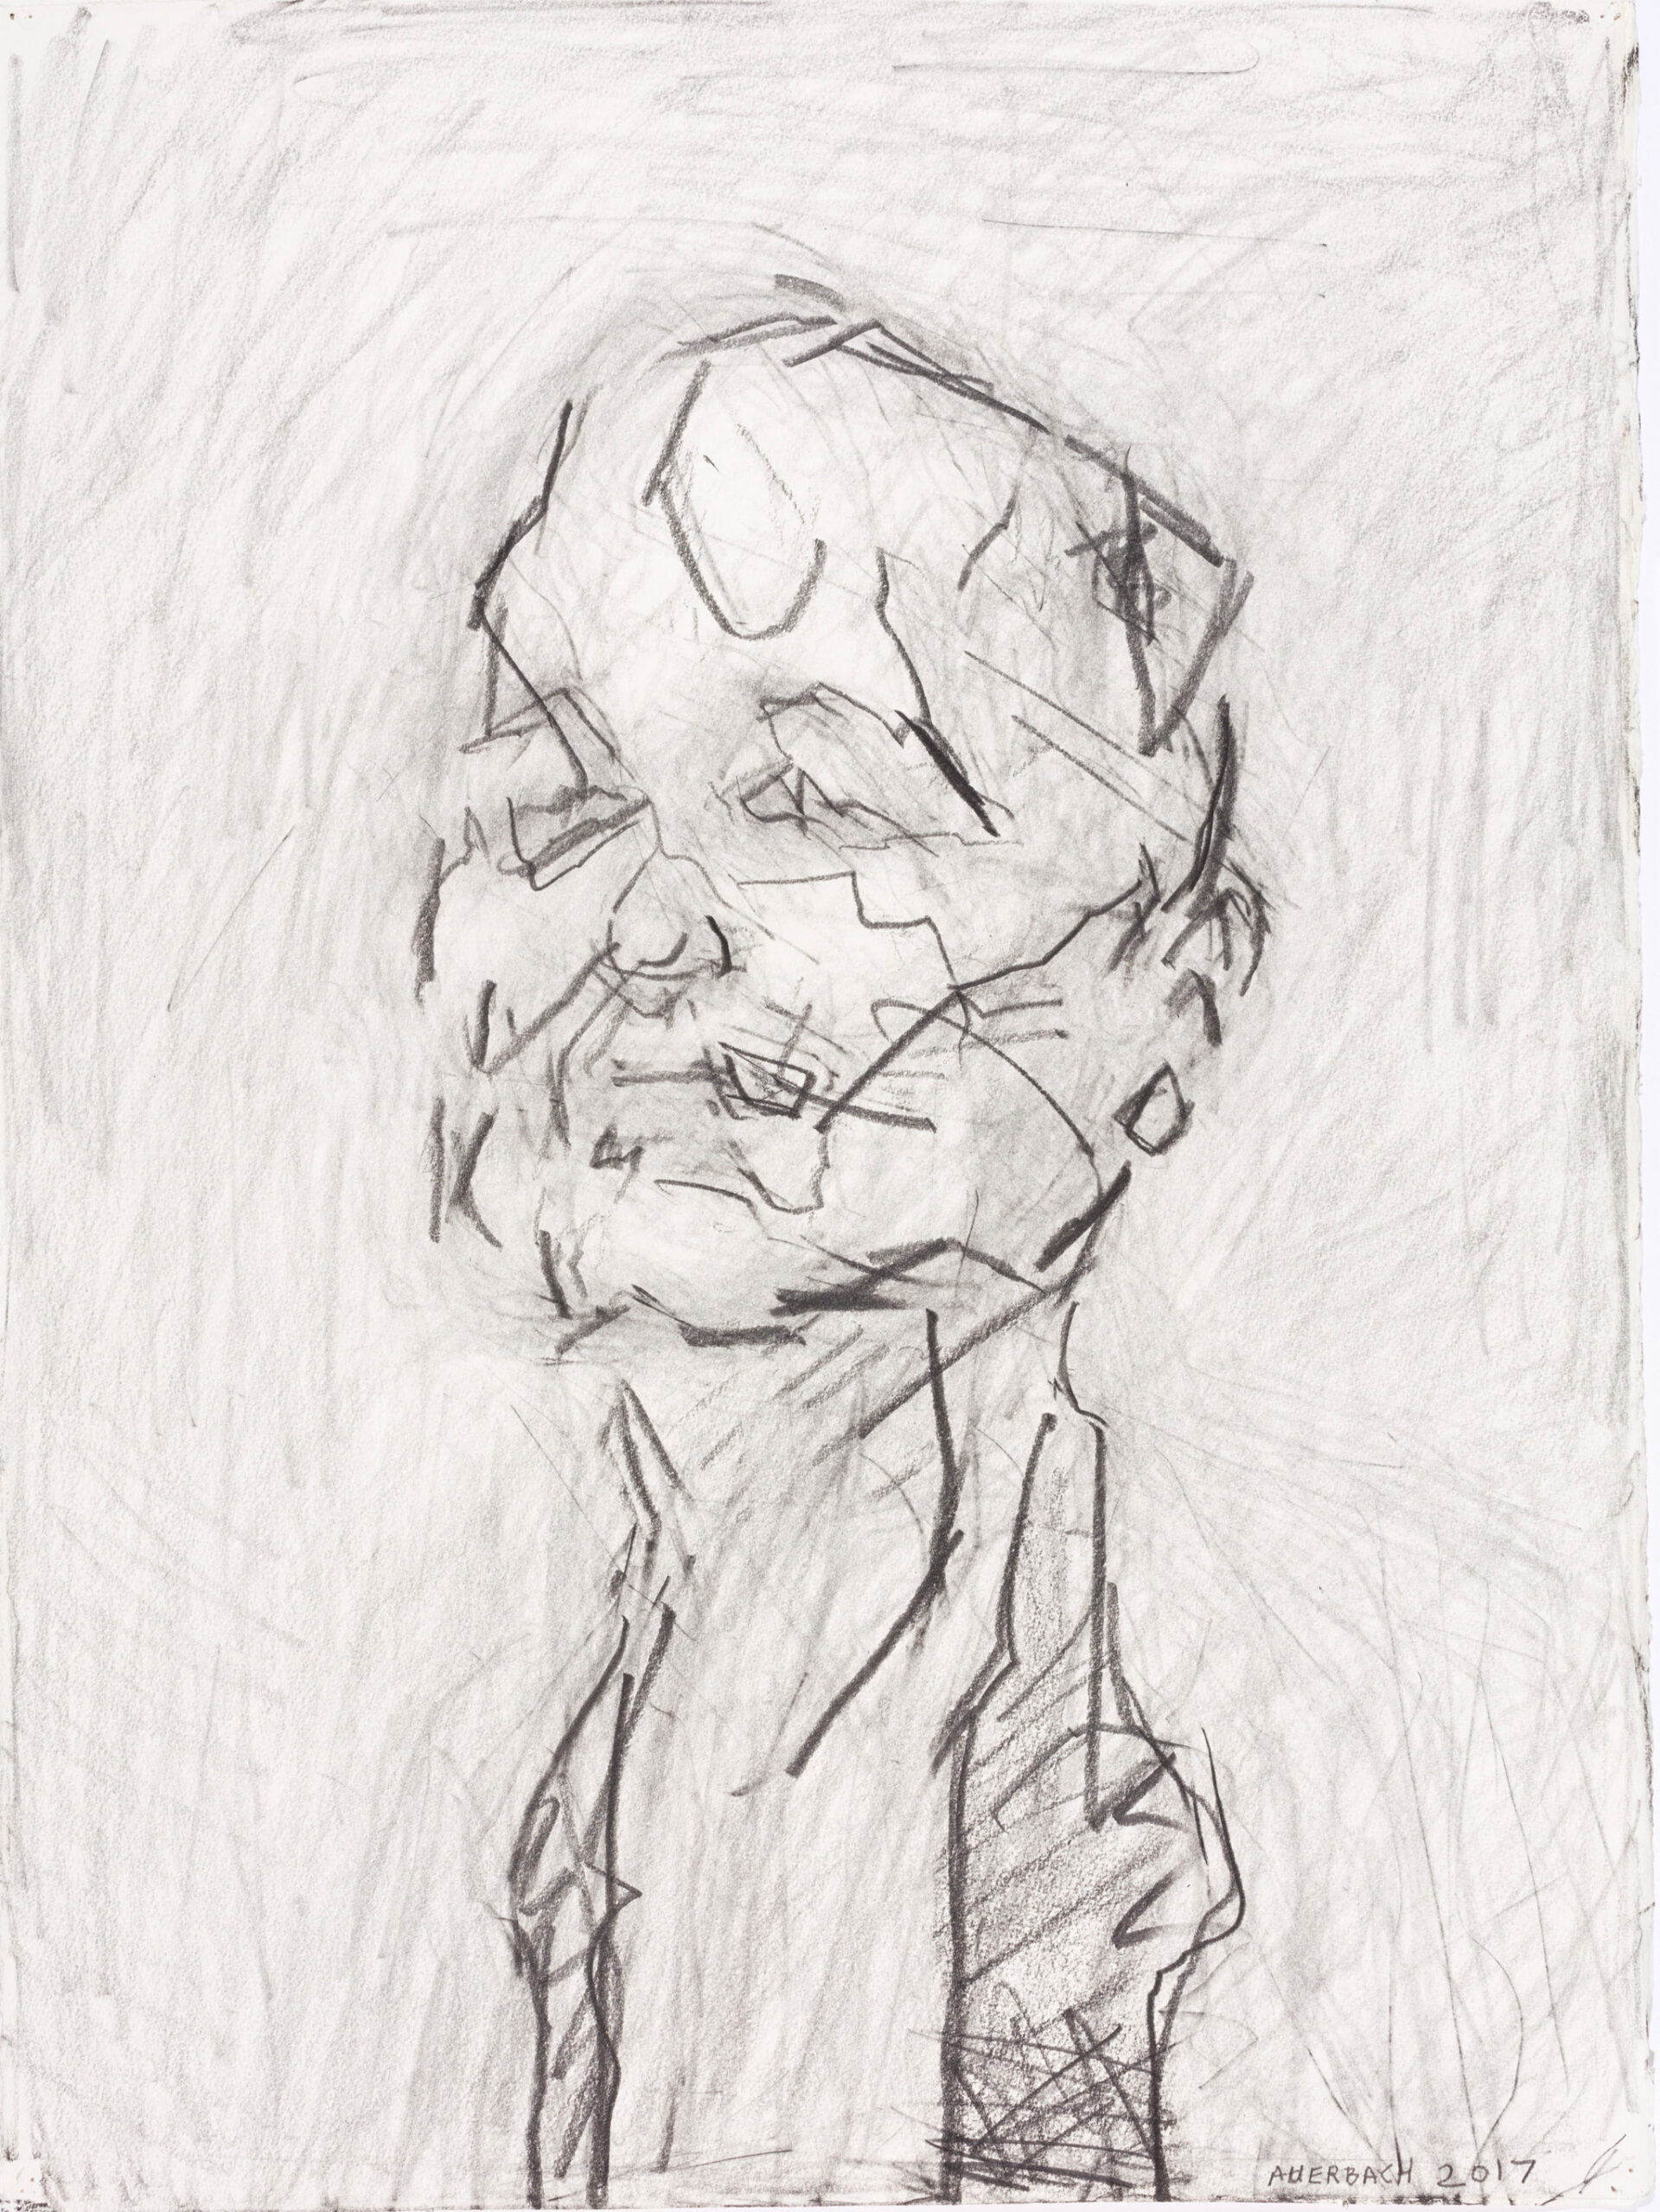 st_presse_Auerbach_Self Portrait_schnitt